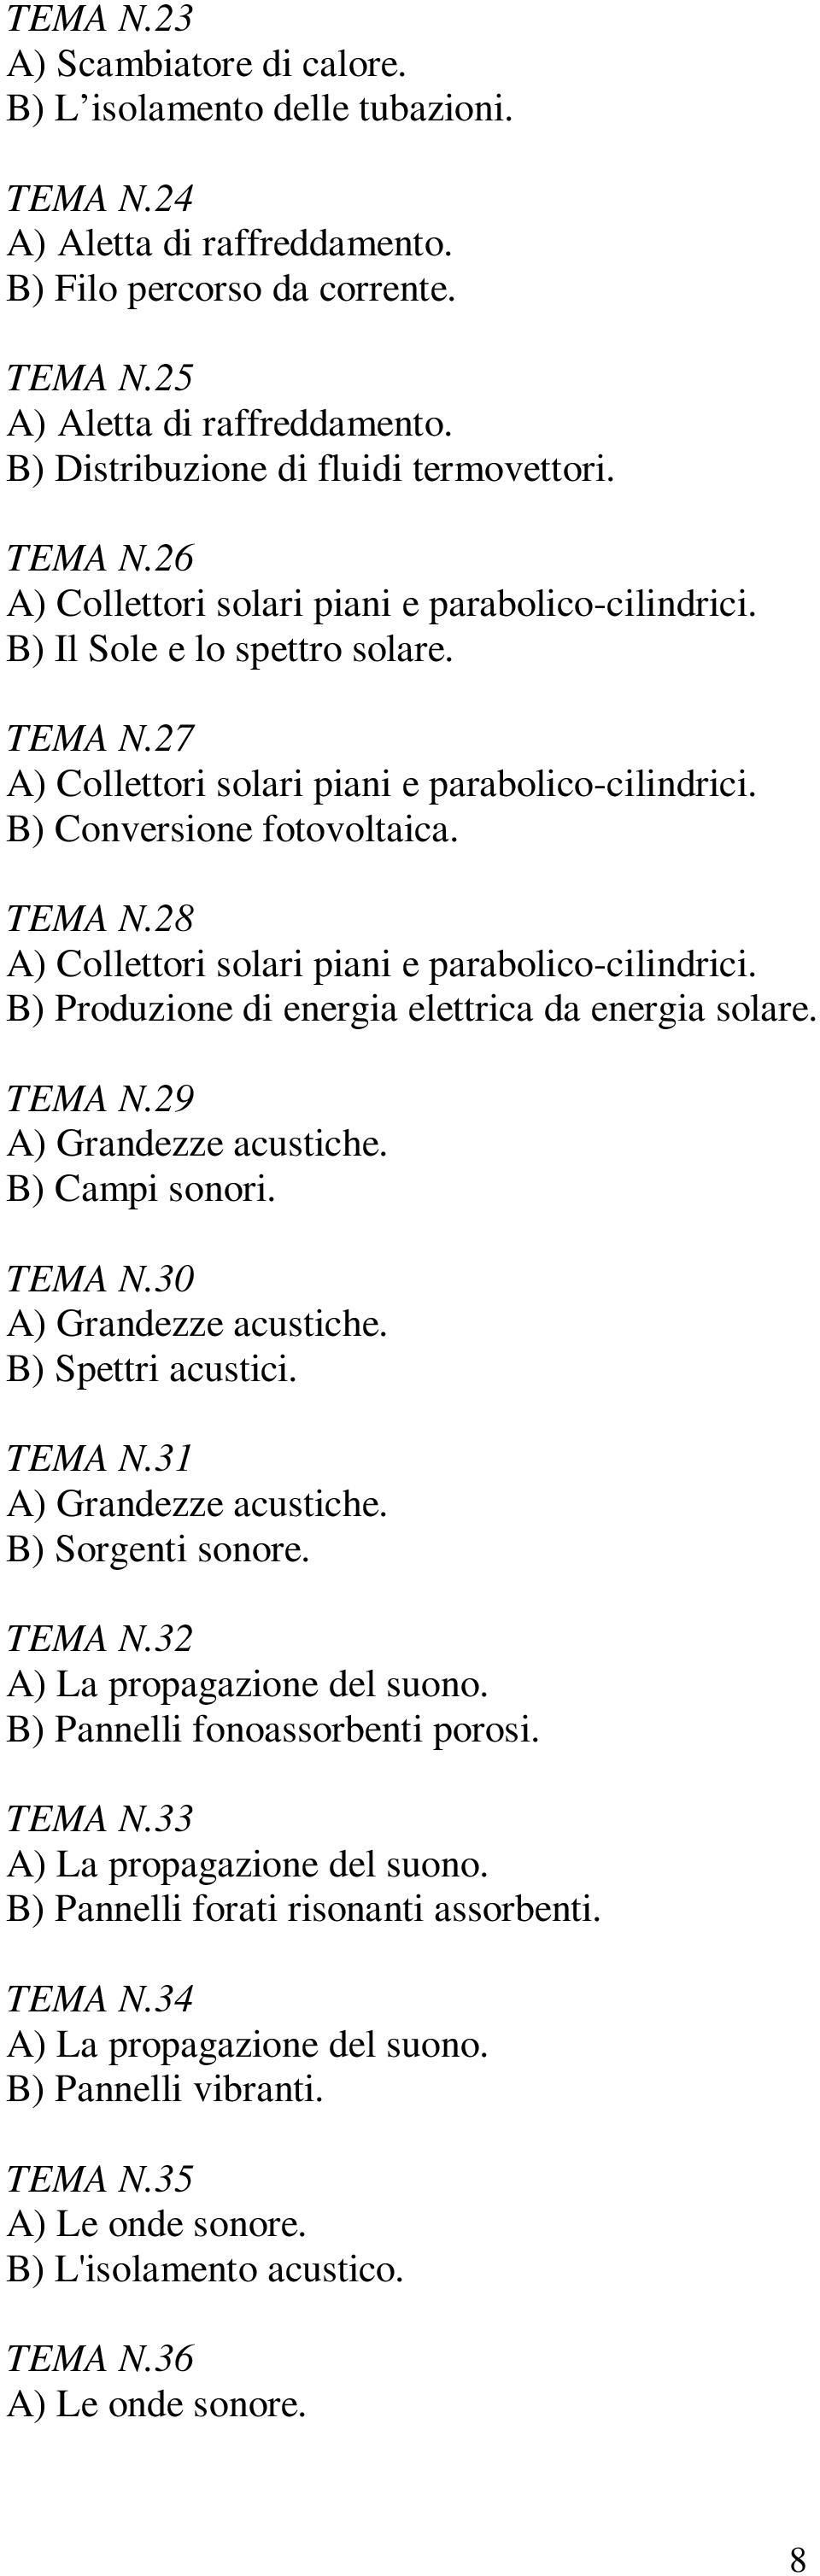 B) Conversione fotovoltaica. TEMA N.28 A) Collettori solari piani e parabolico-cilindrici. B) Produzione di energia elettrica da energia solare. TEMA N.29 A) Grandezze acustiche. B) Campi sonori.